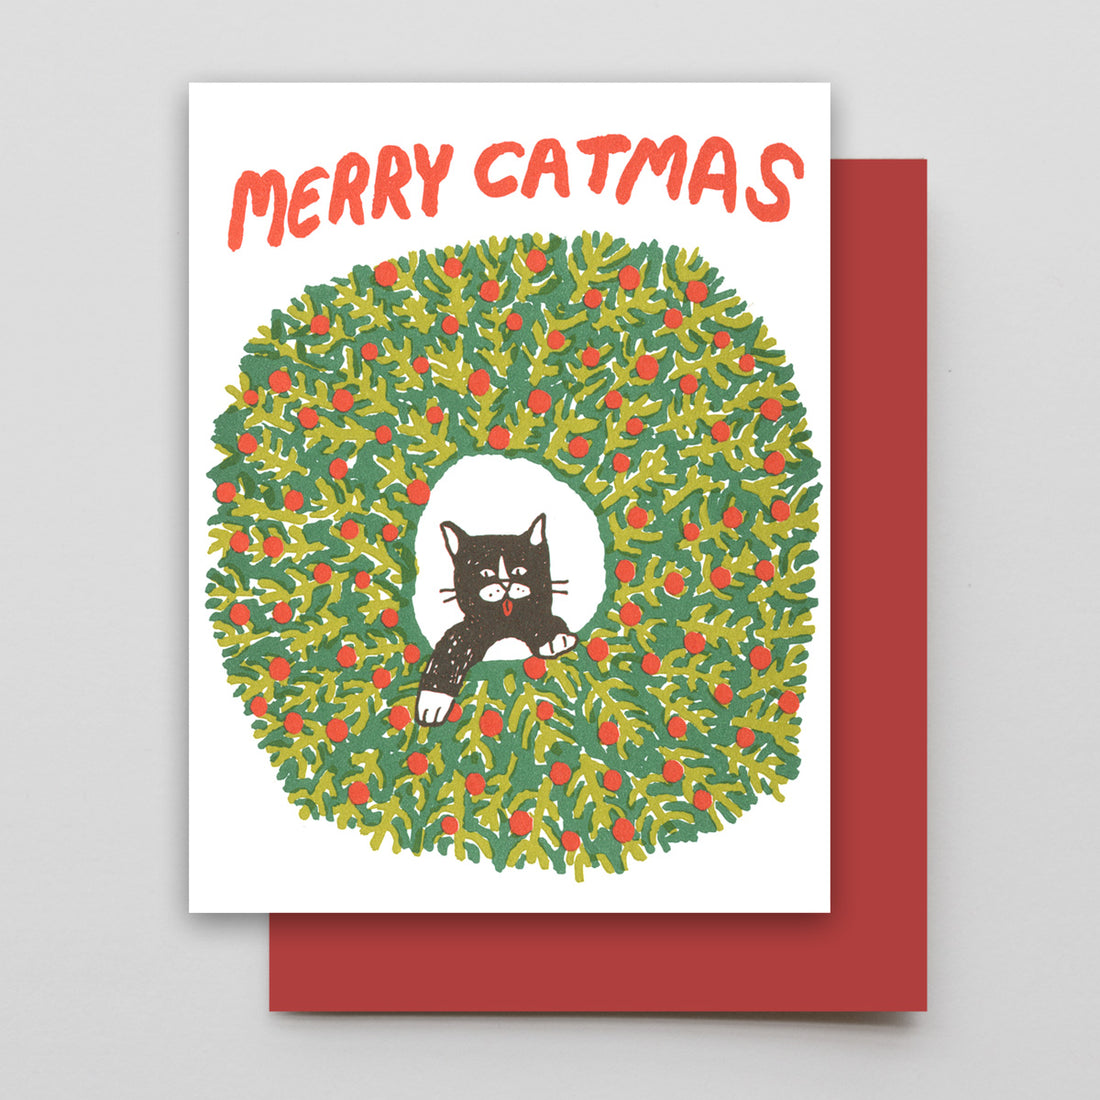 Merry Catmus